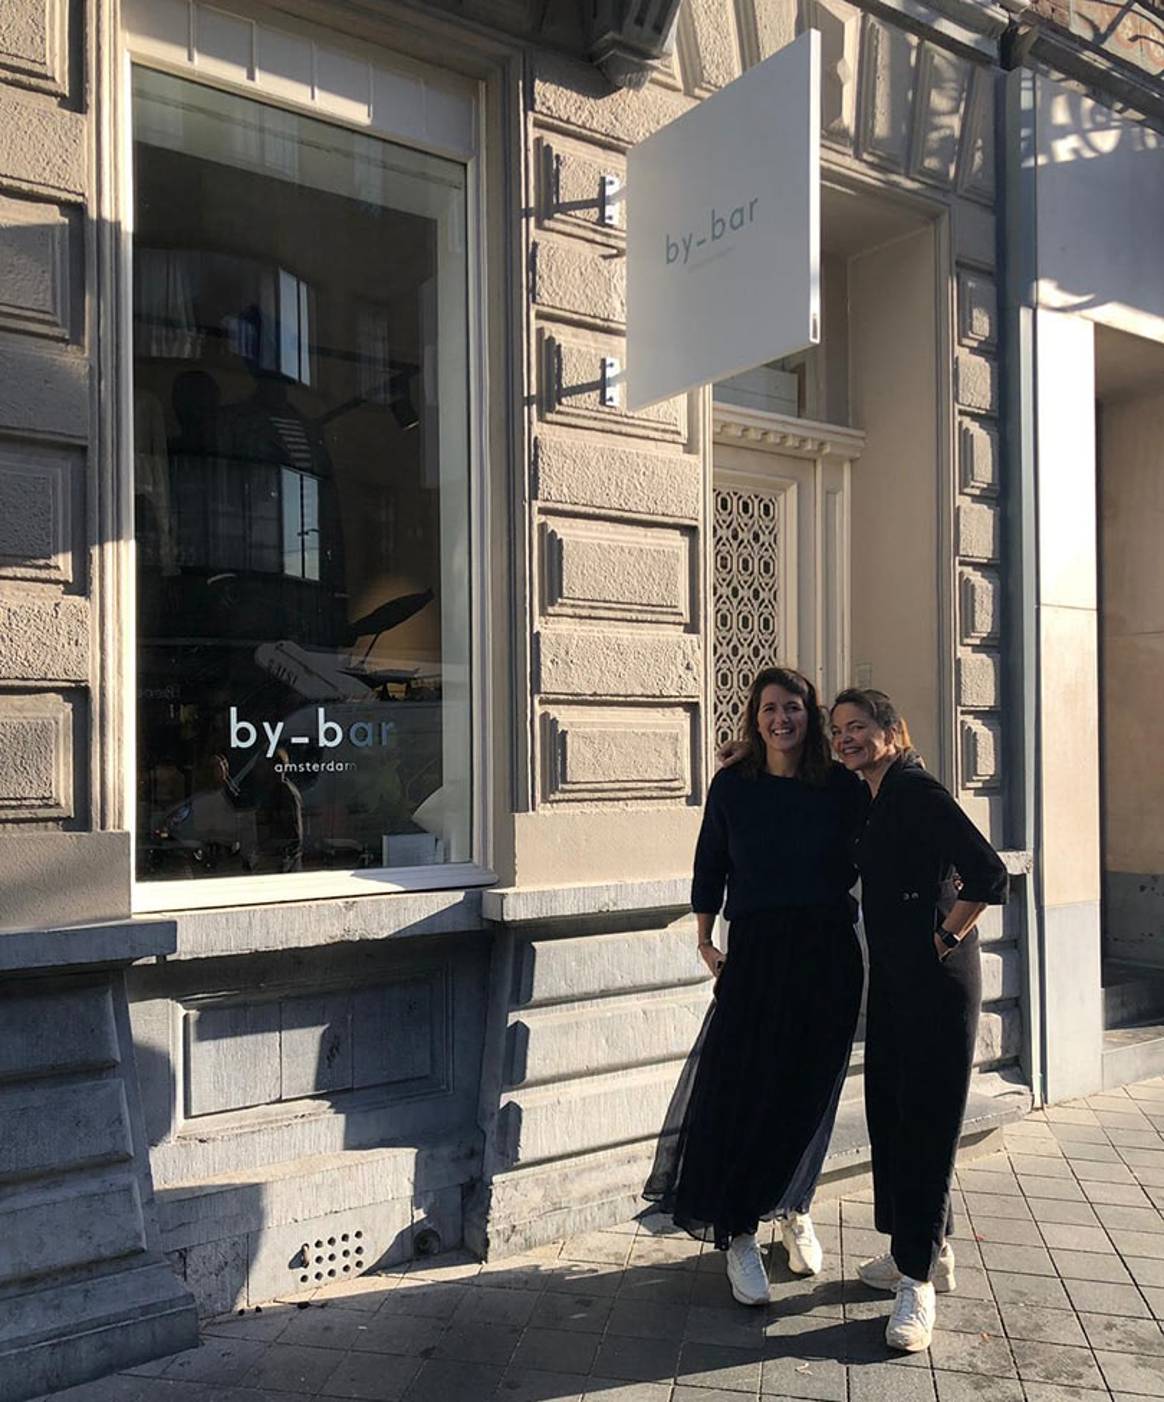 Nederlands modemerk By-bar opent eerste winkel